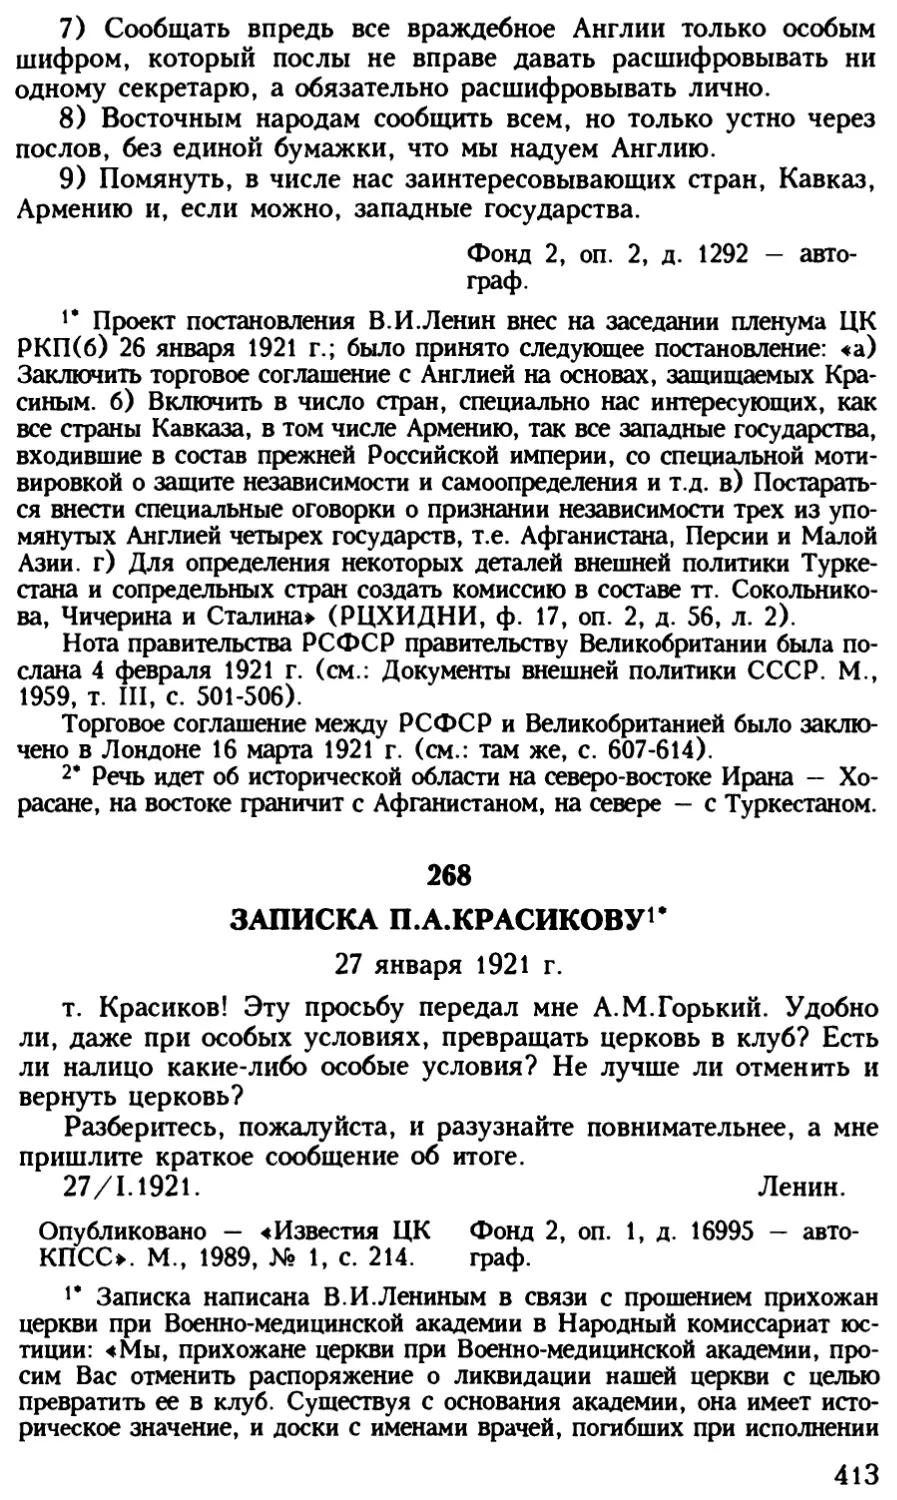 268. Записка П.А.Красикову. 27 января 1921 г